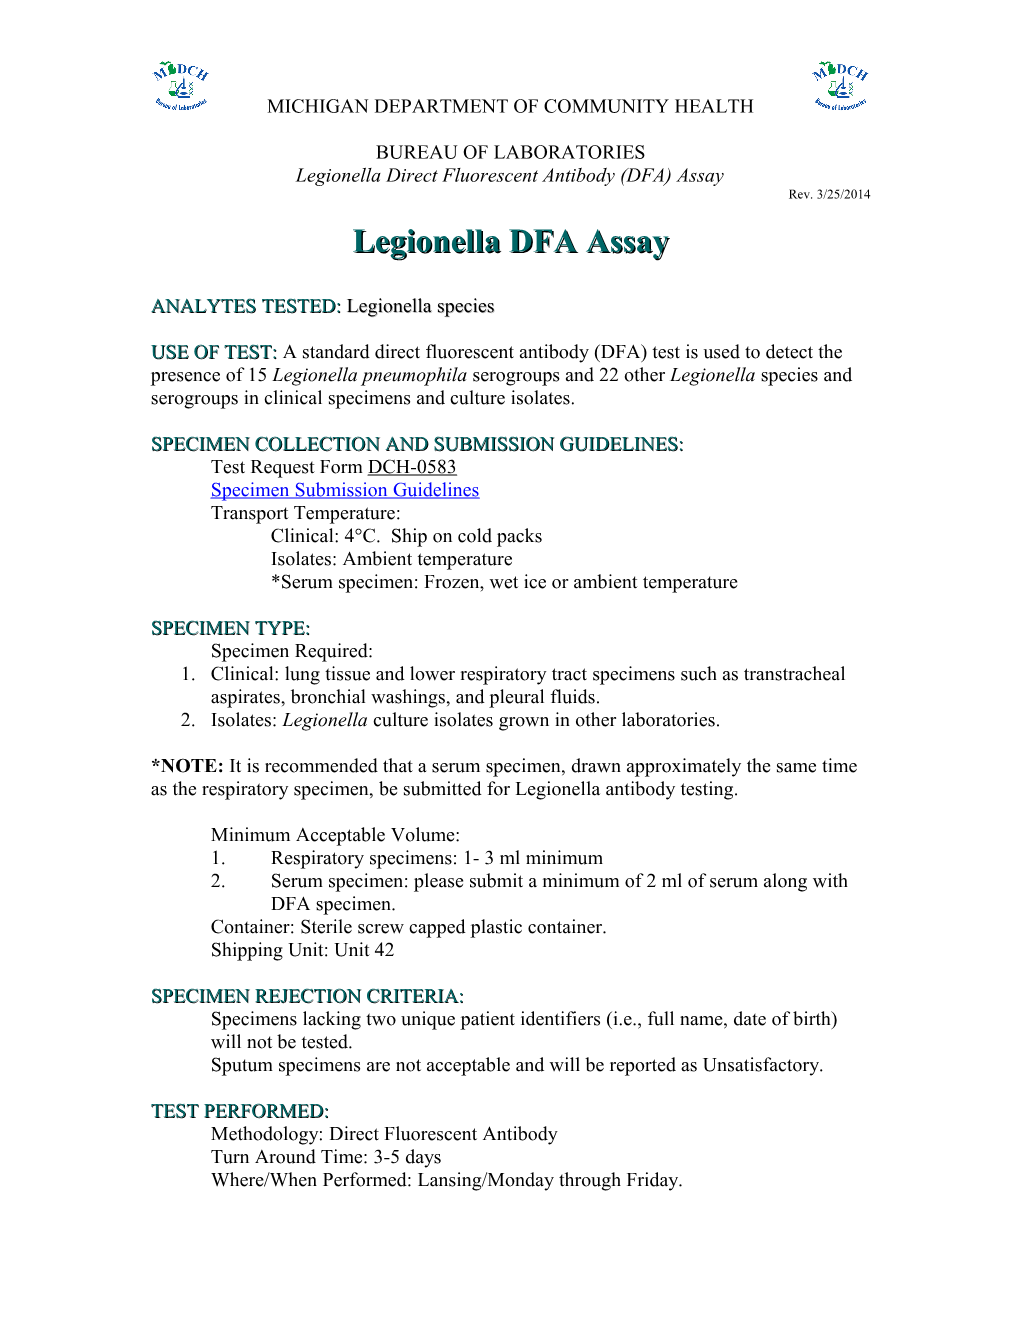 Legionella Direct Fluorescent Antibody (DFA) Assay